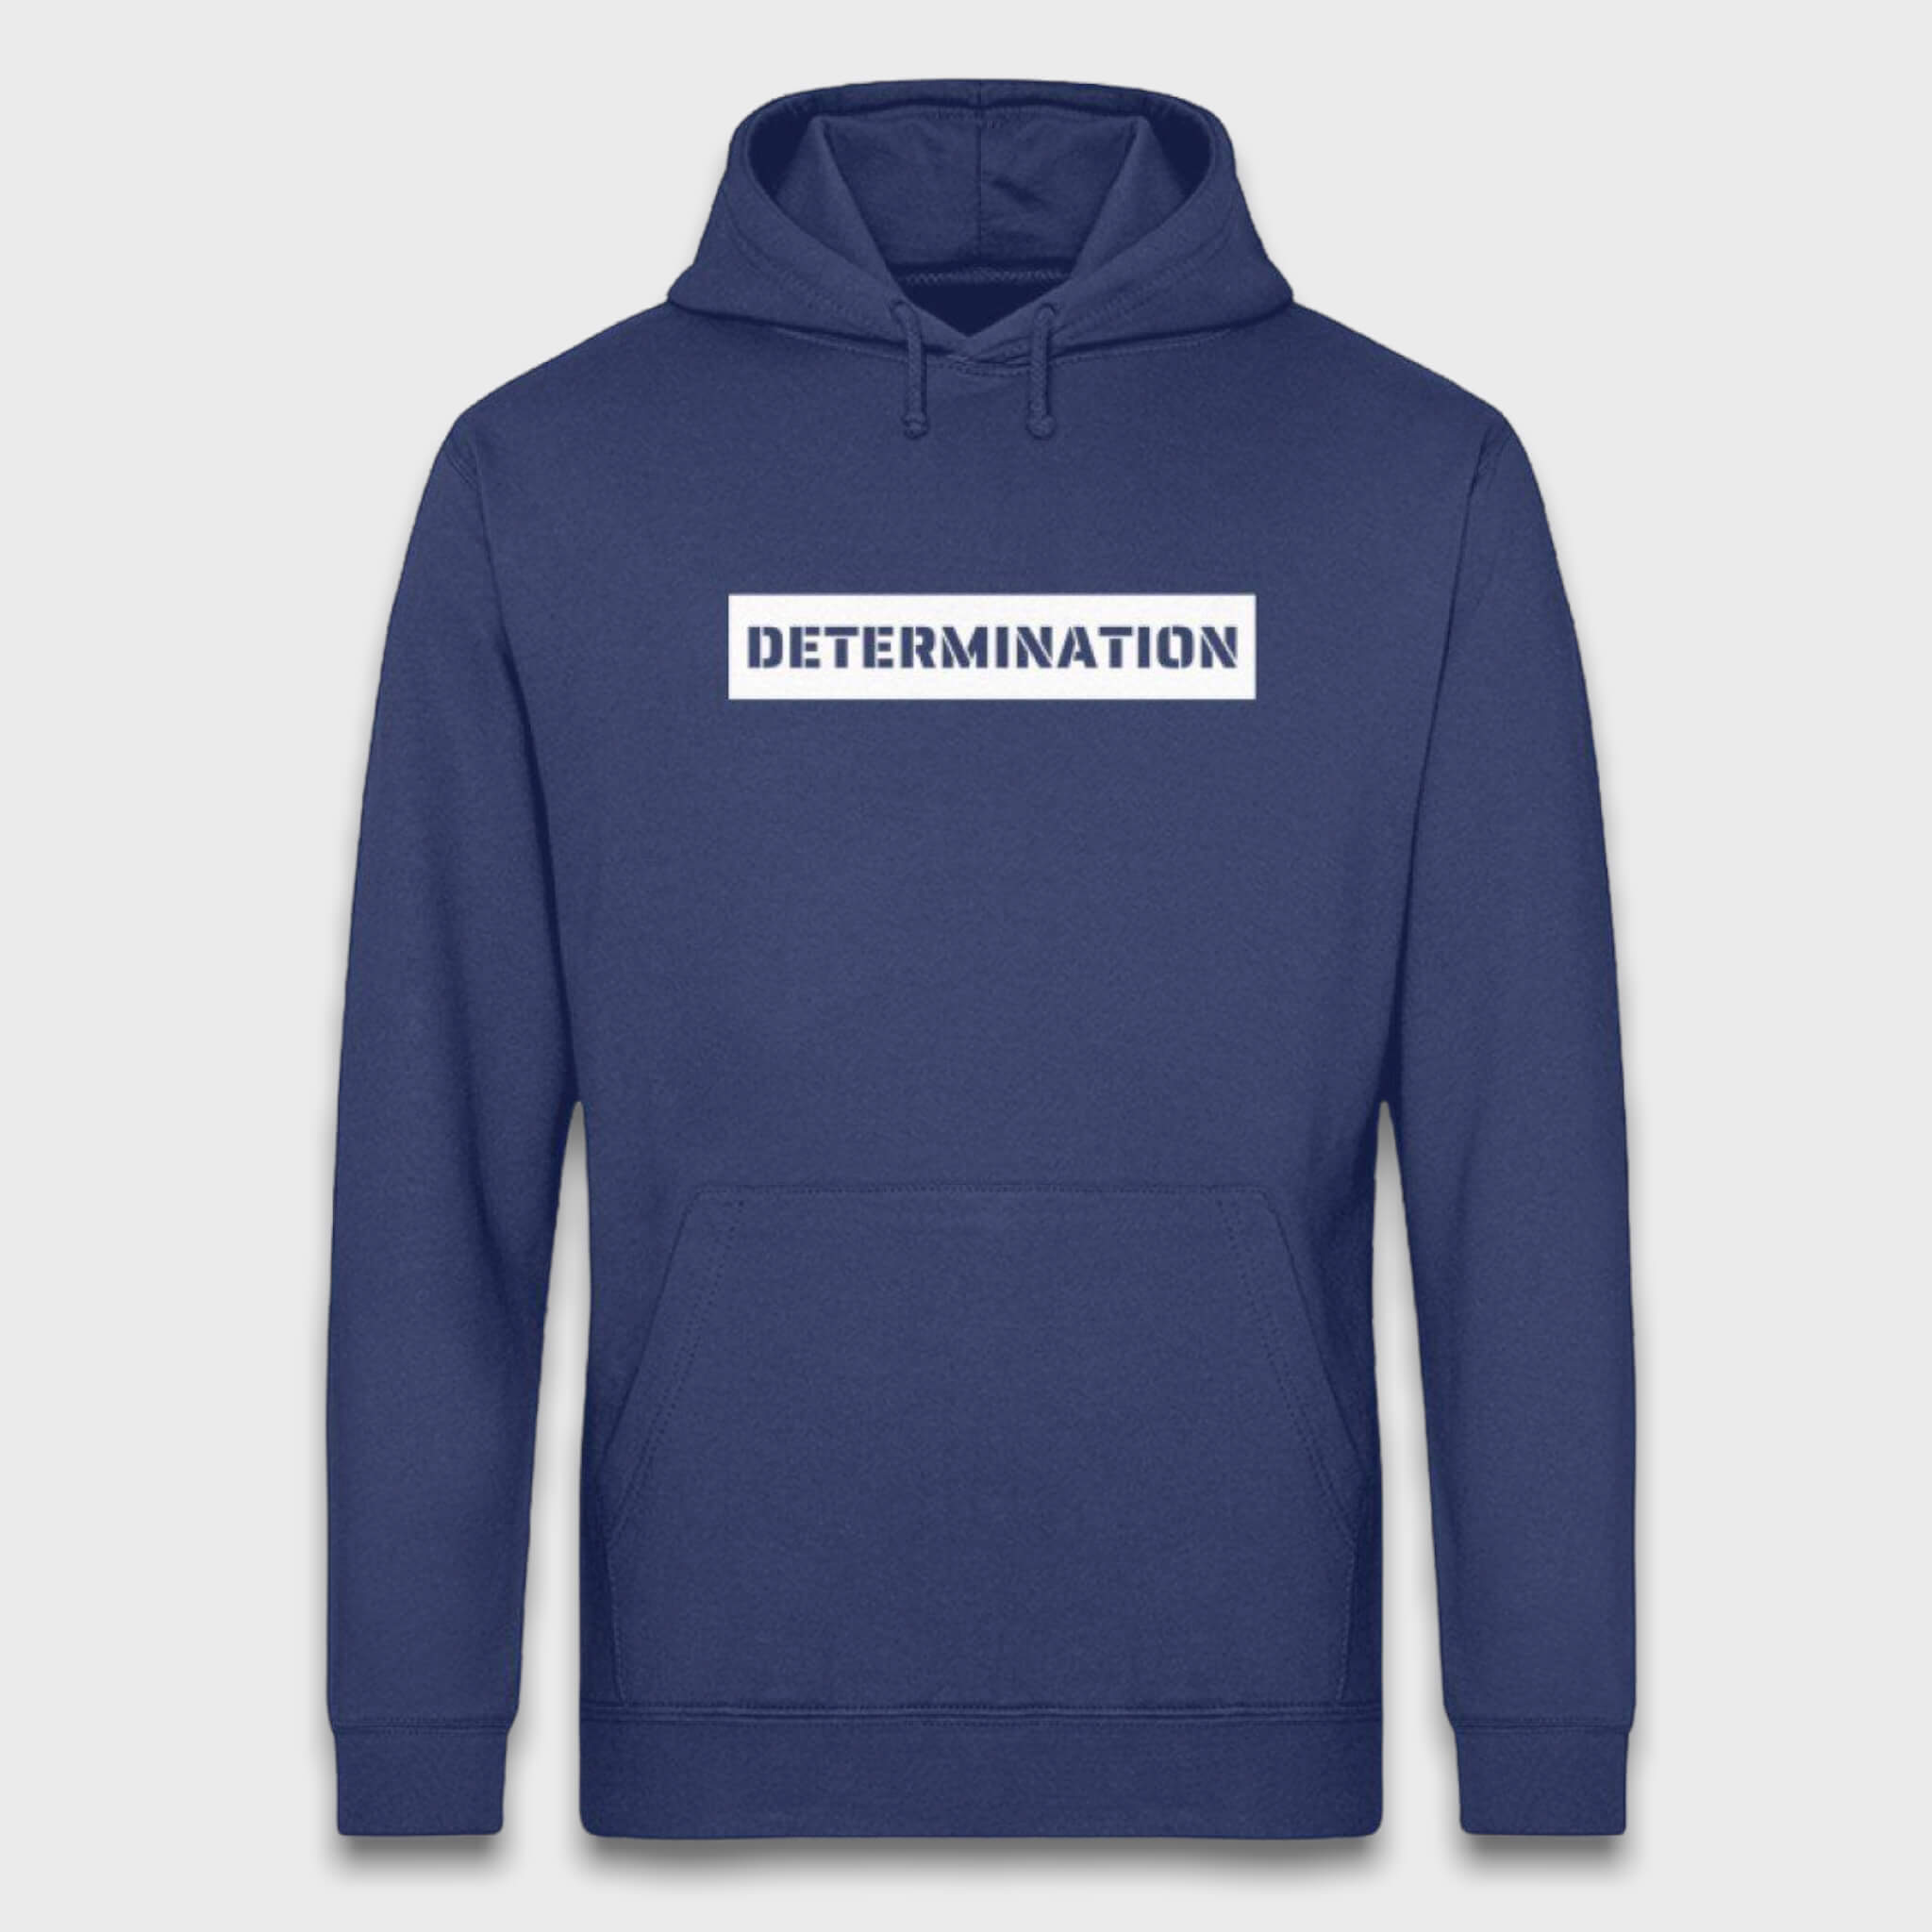 Determination - Bio Unisex Hoodie (BASIC)